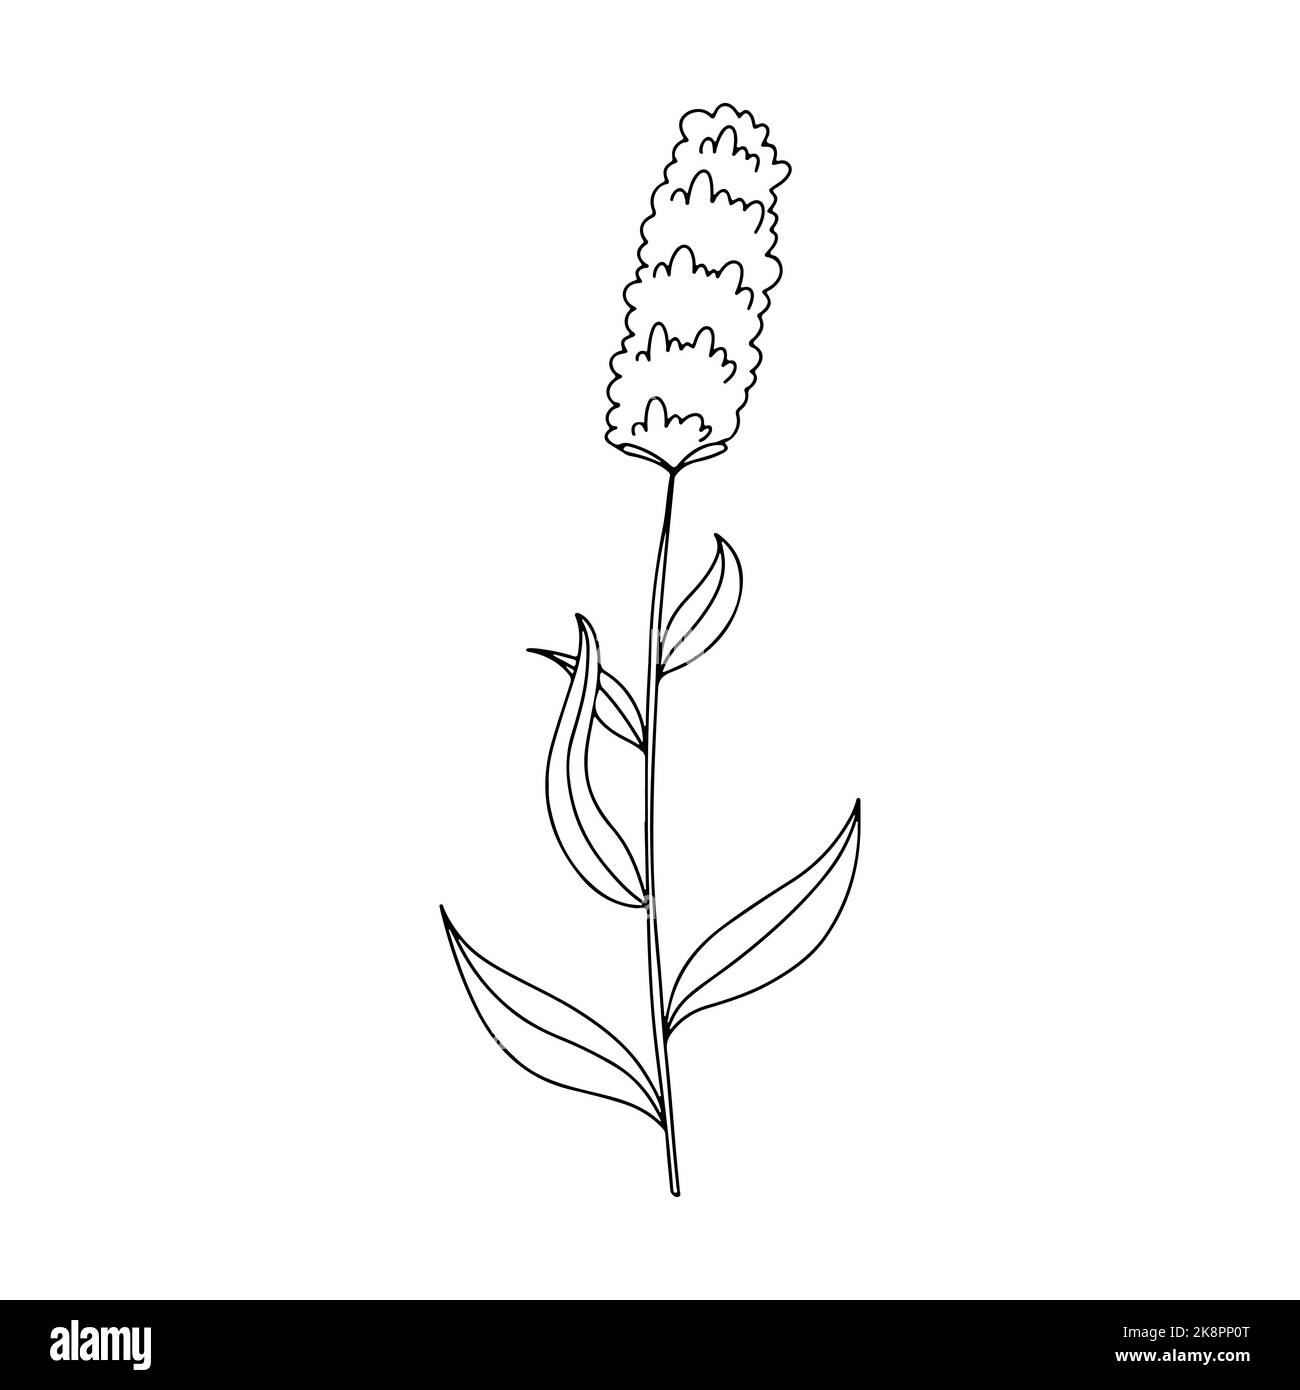 Illustrazione vettoriale disegnata a mano del fiore selvatico del prato fiorente. Bistorta Poligomun in stile doodle. Elemento di design del logo per biglietti d'auguri, inviti. Illustrazione Vettoriale